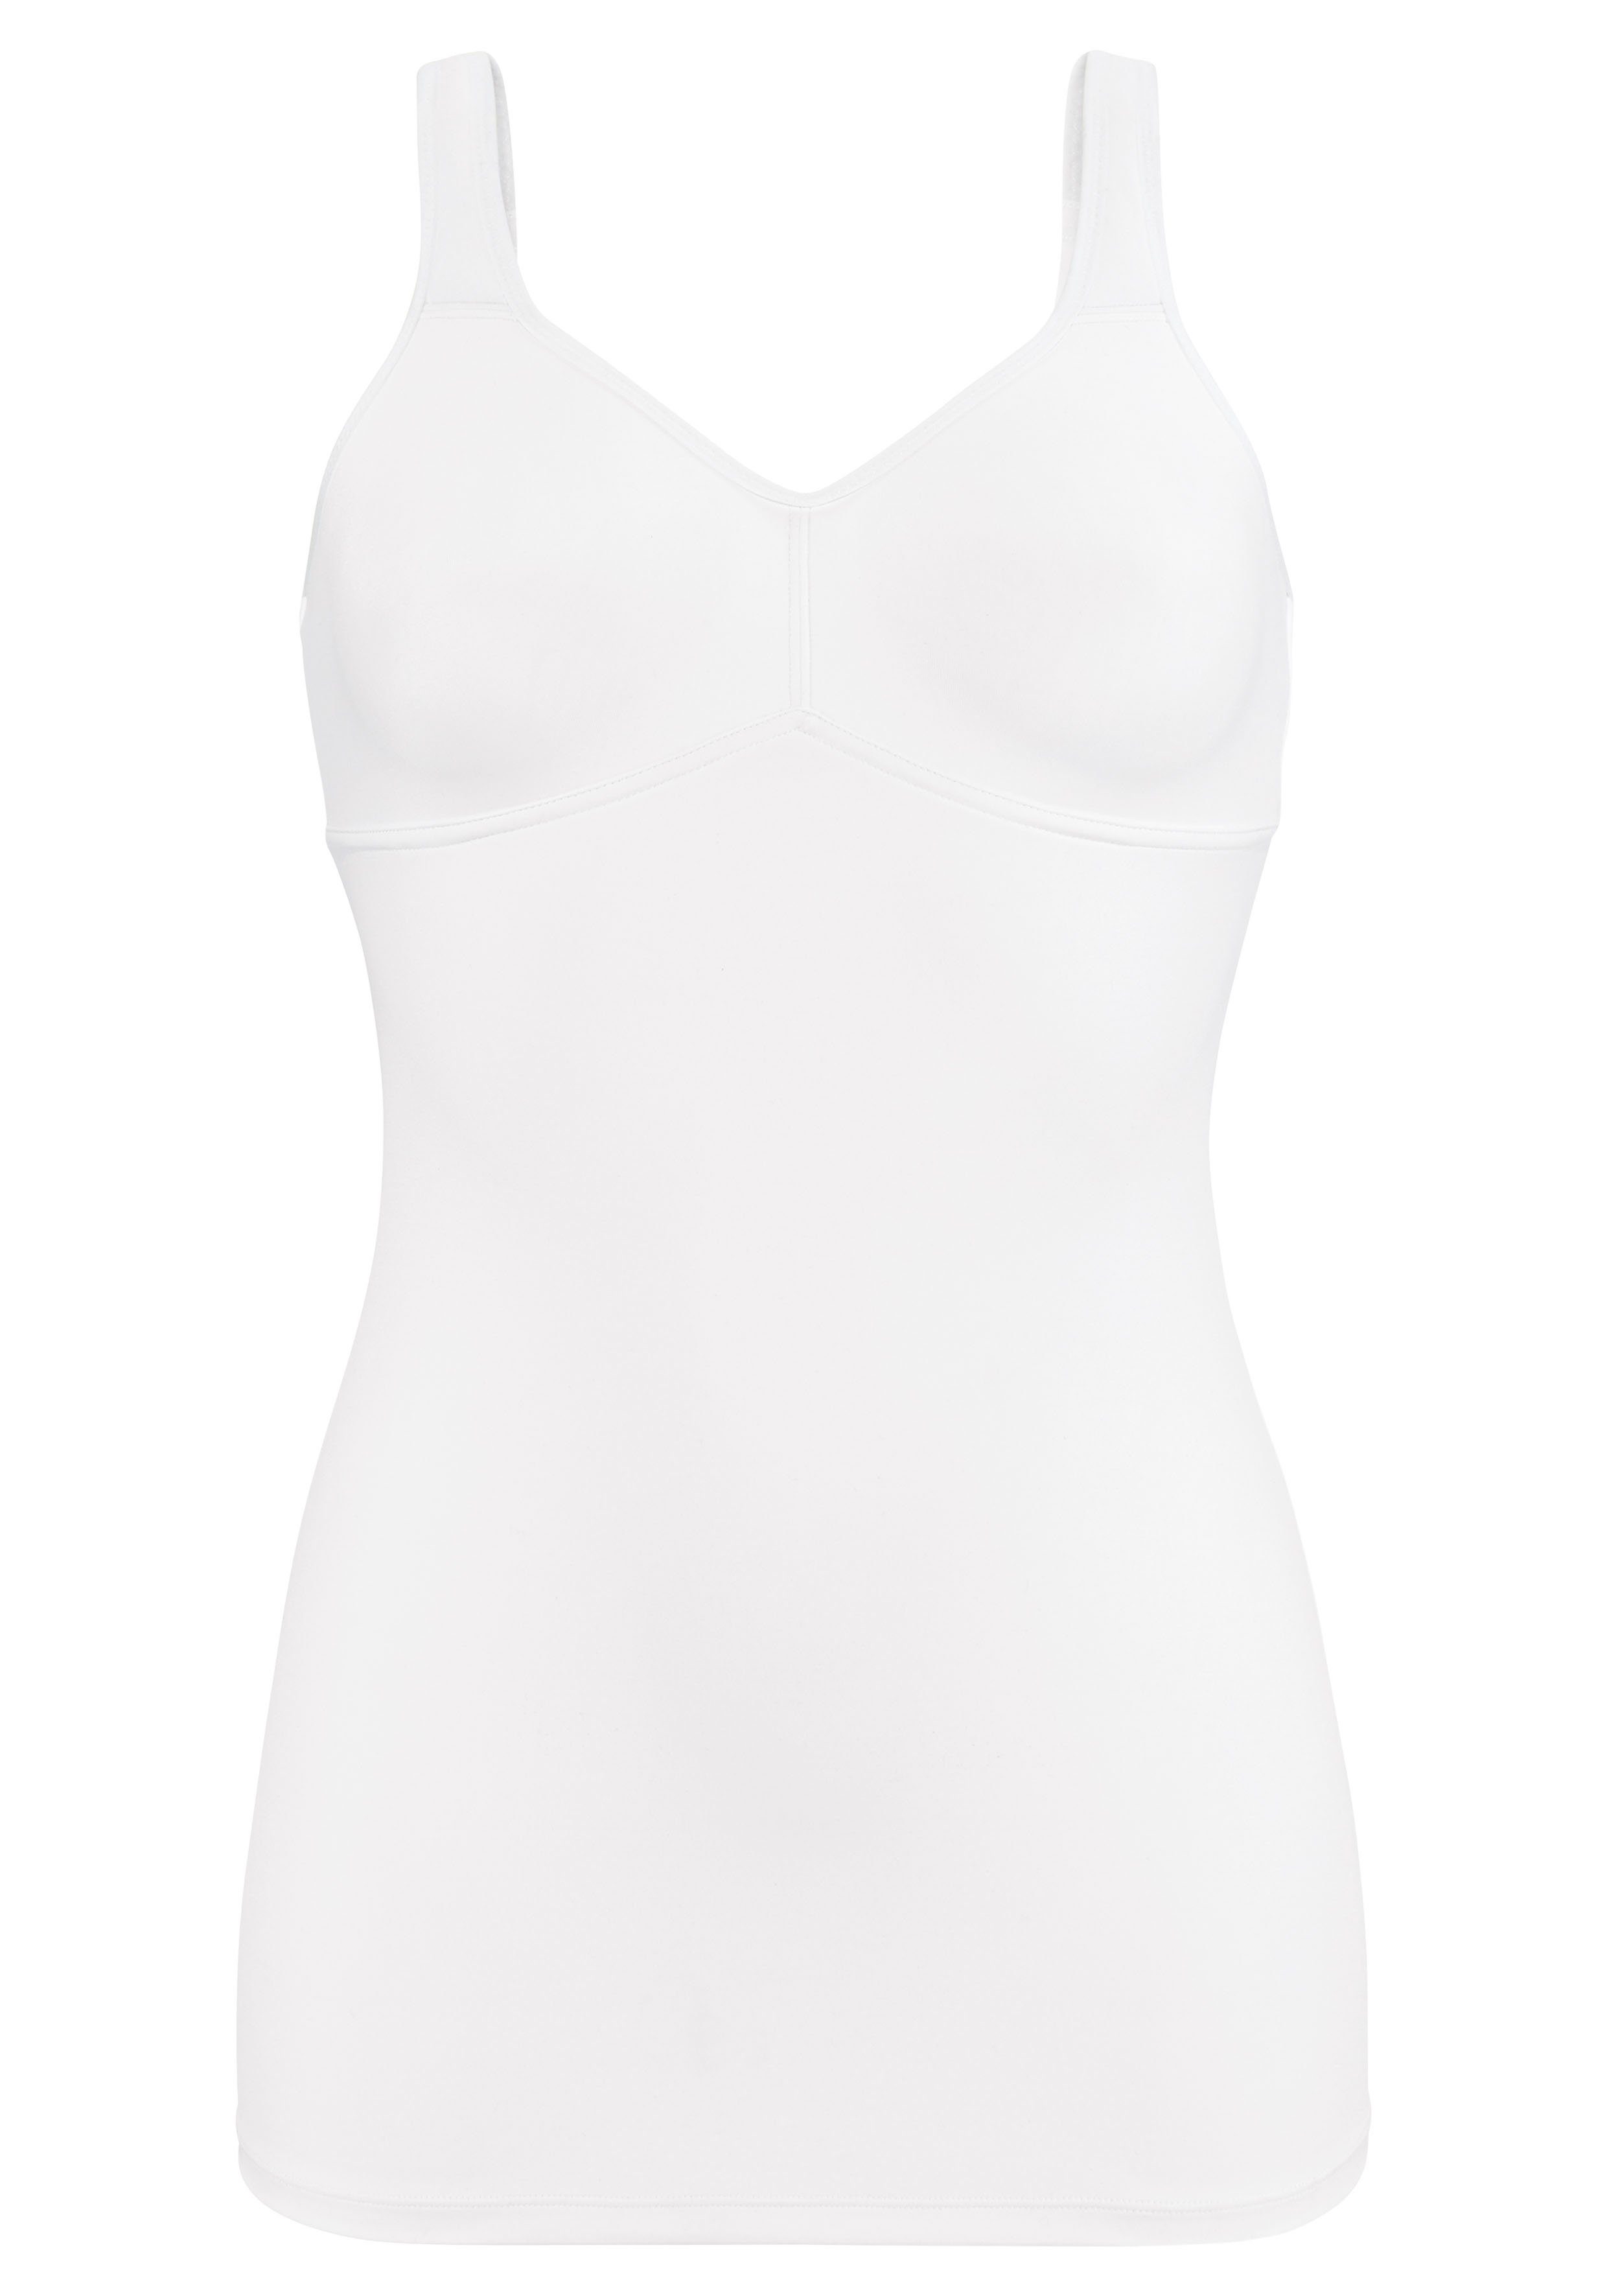 LASCANA BH-Hemd ohne Bügel mit Dessous Rückenverschluss, Basic weiß